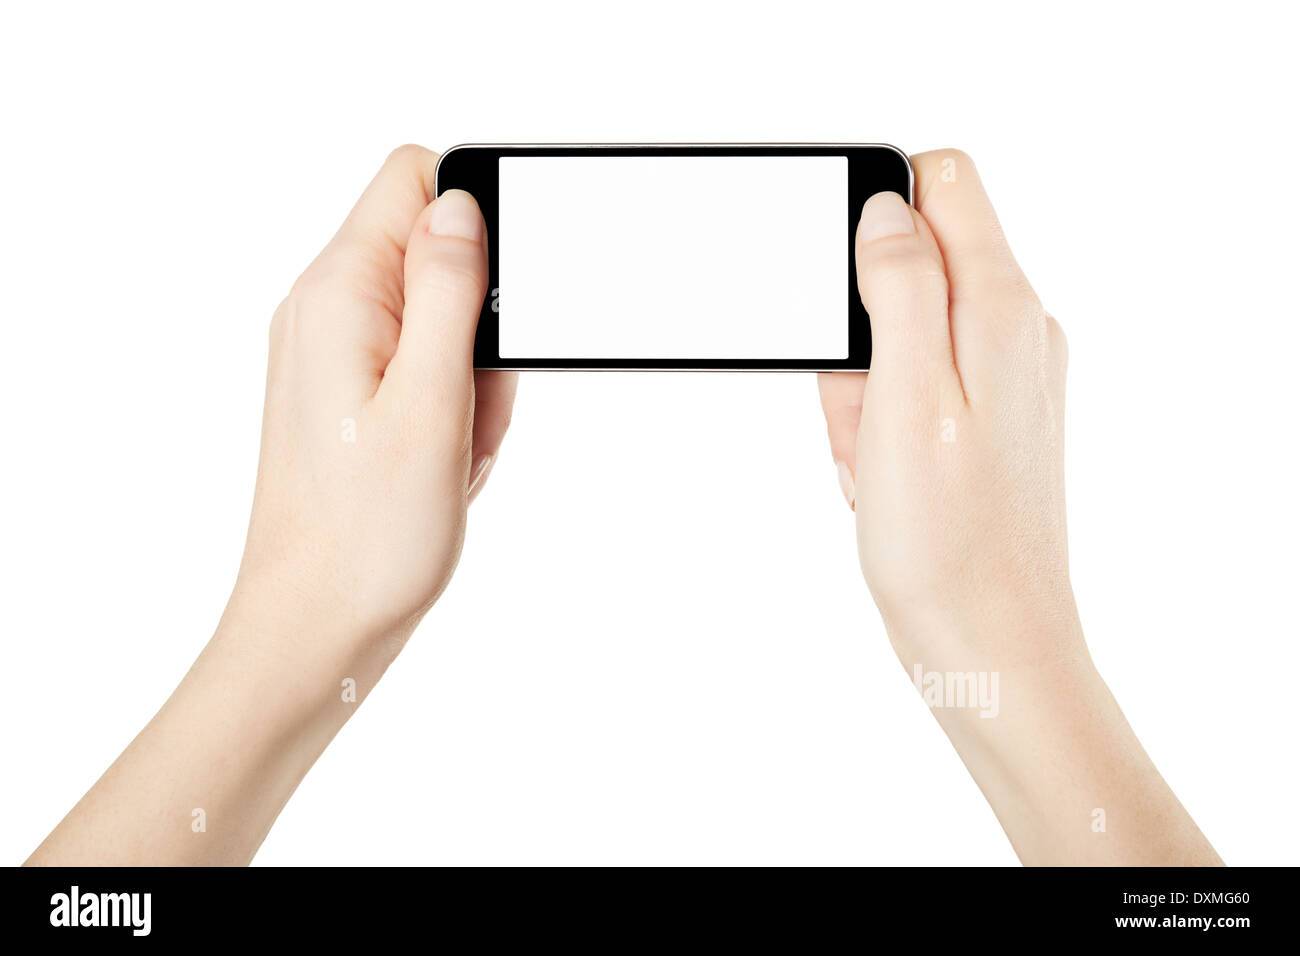 Manos sosteniendo el dispositivo smartphone en horizontal, juegos Foto de stock